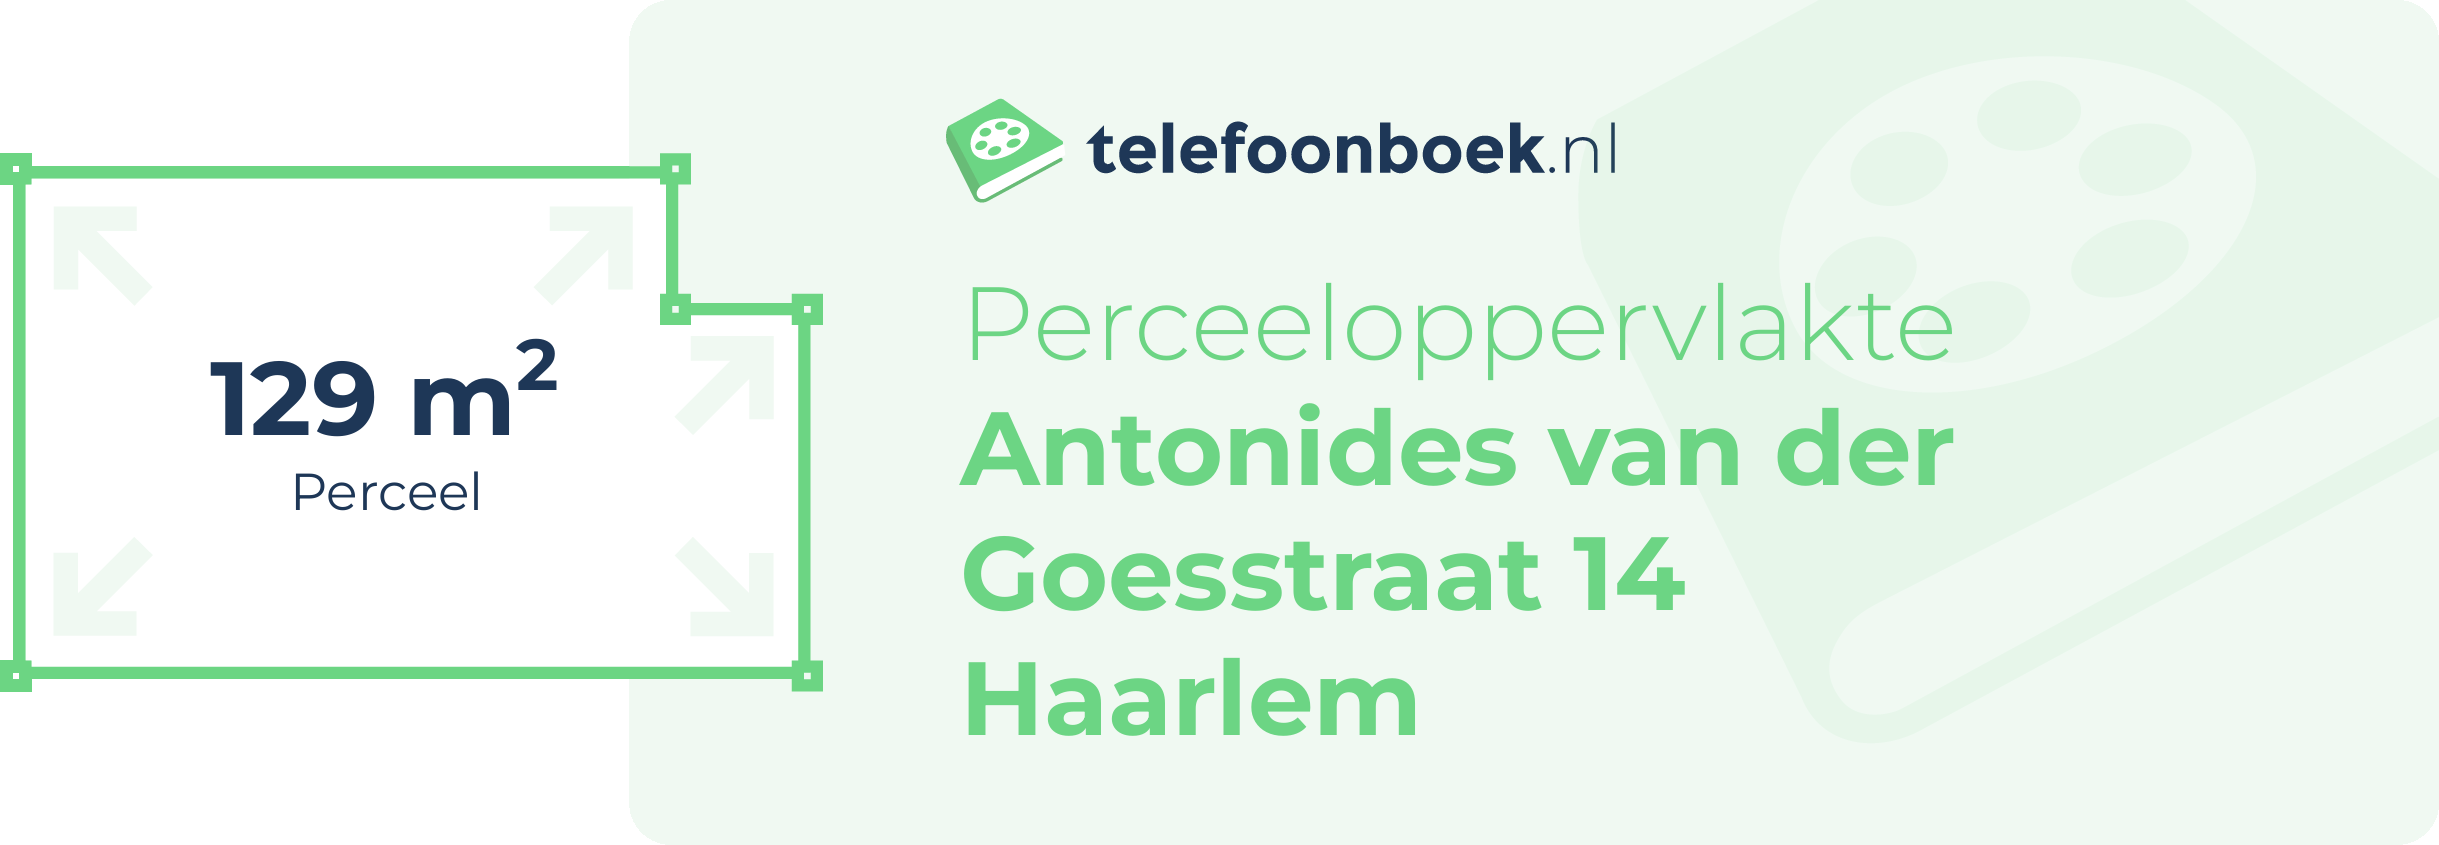 Perceeloppervlakte Antonides Van Der Goesstraat 14 Haarlem